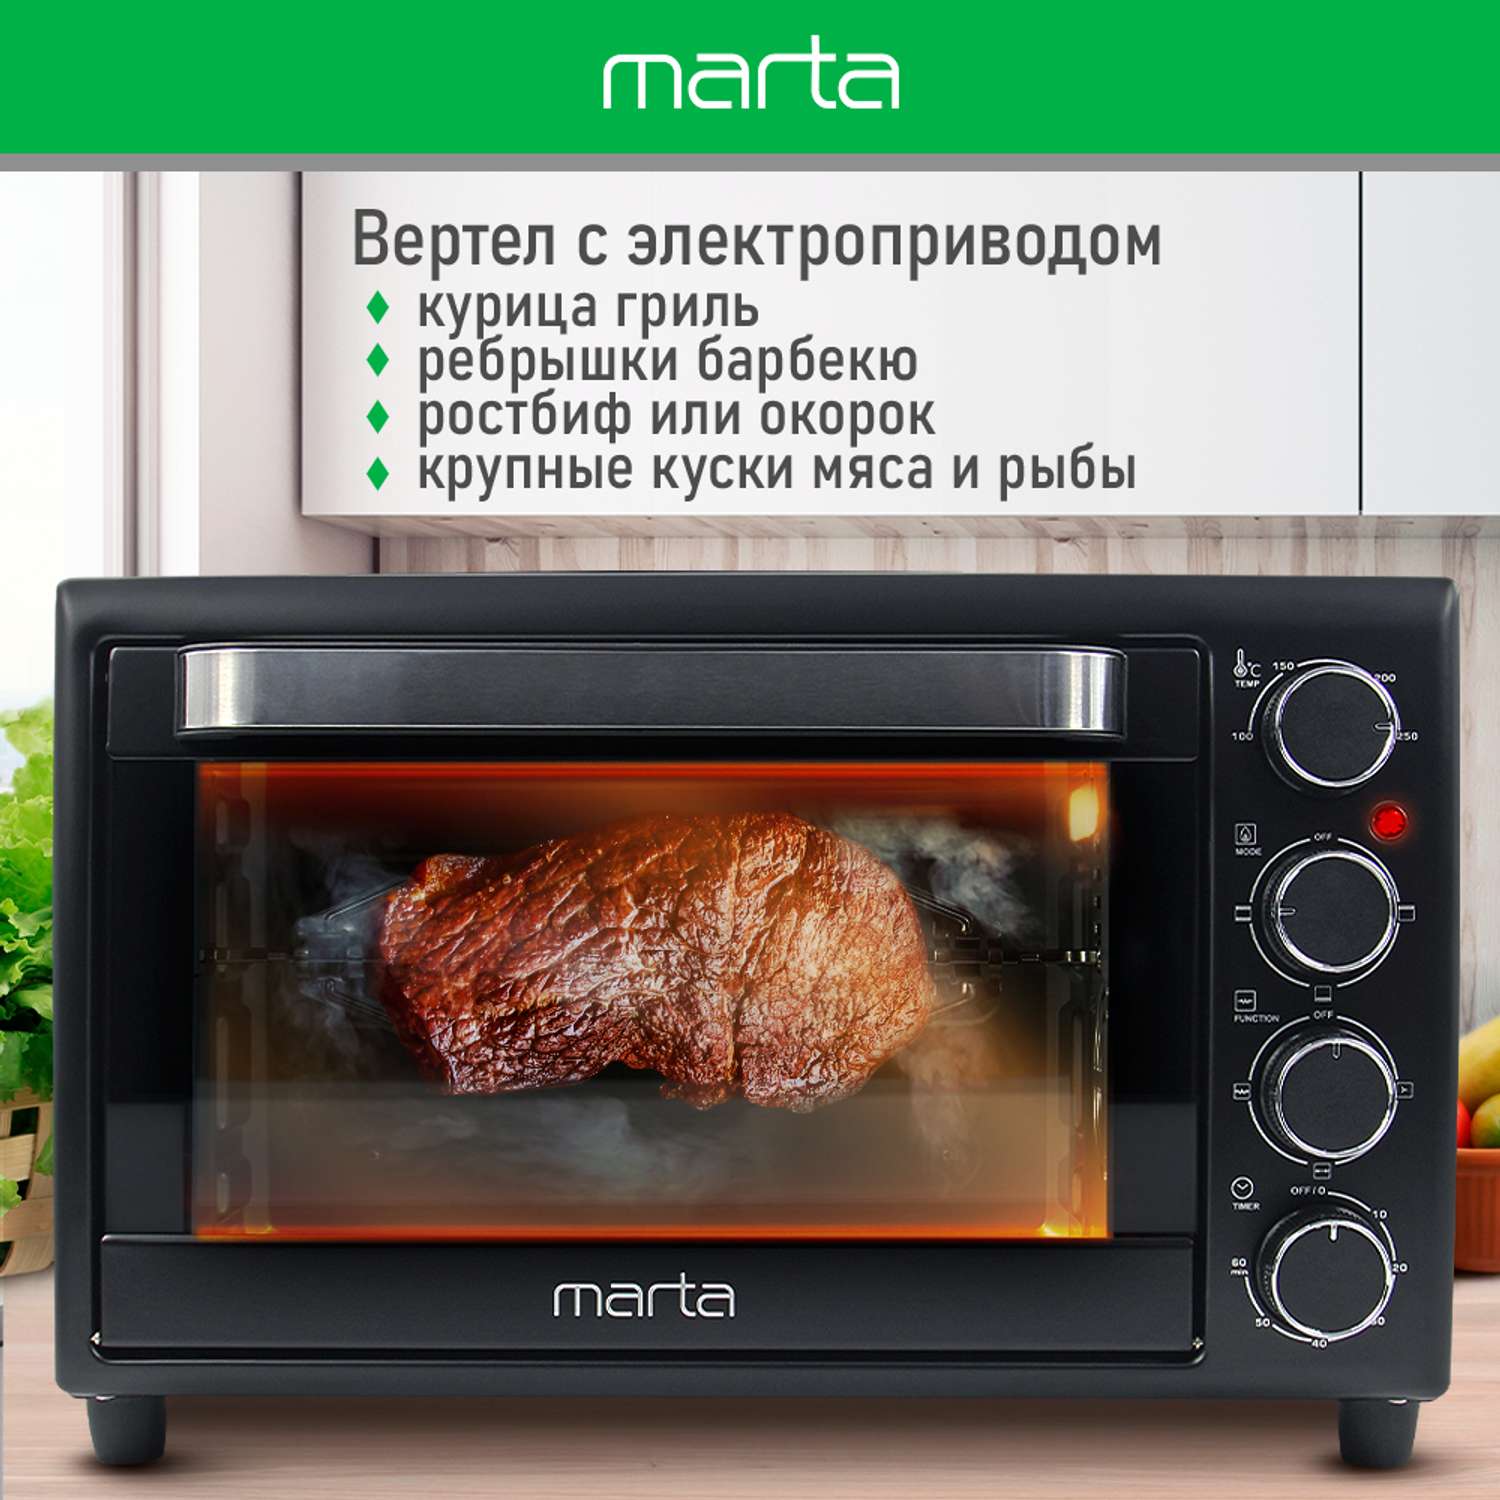 Мини-печь MARTA MT-EO4299A духовой шкаф/черный жемчуг - фото 5